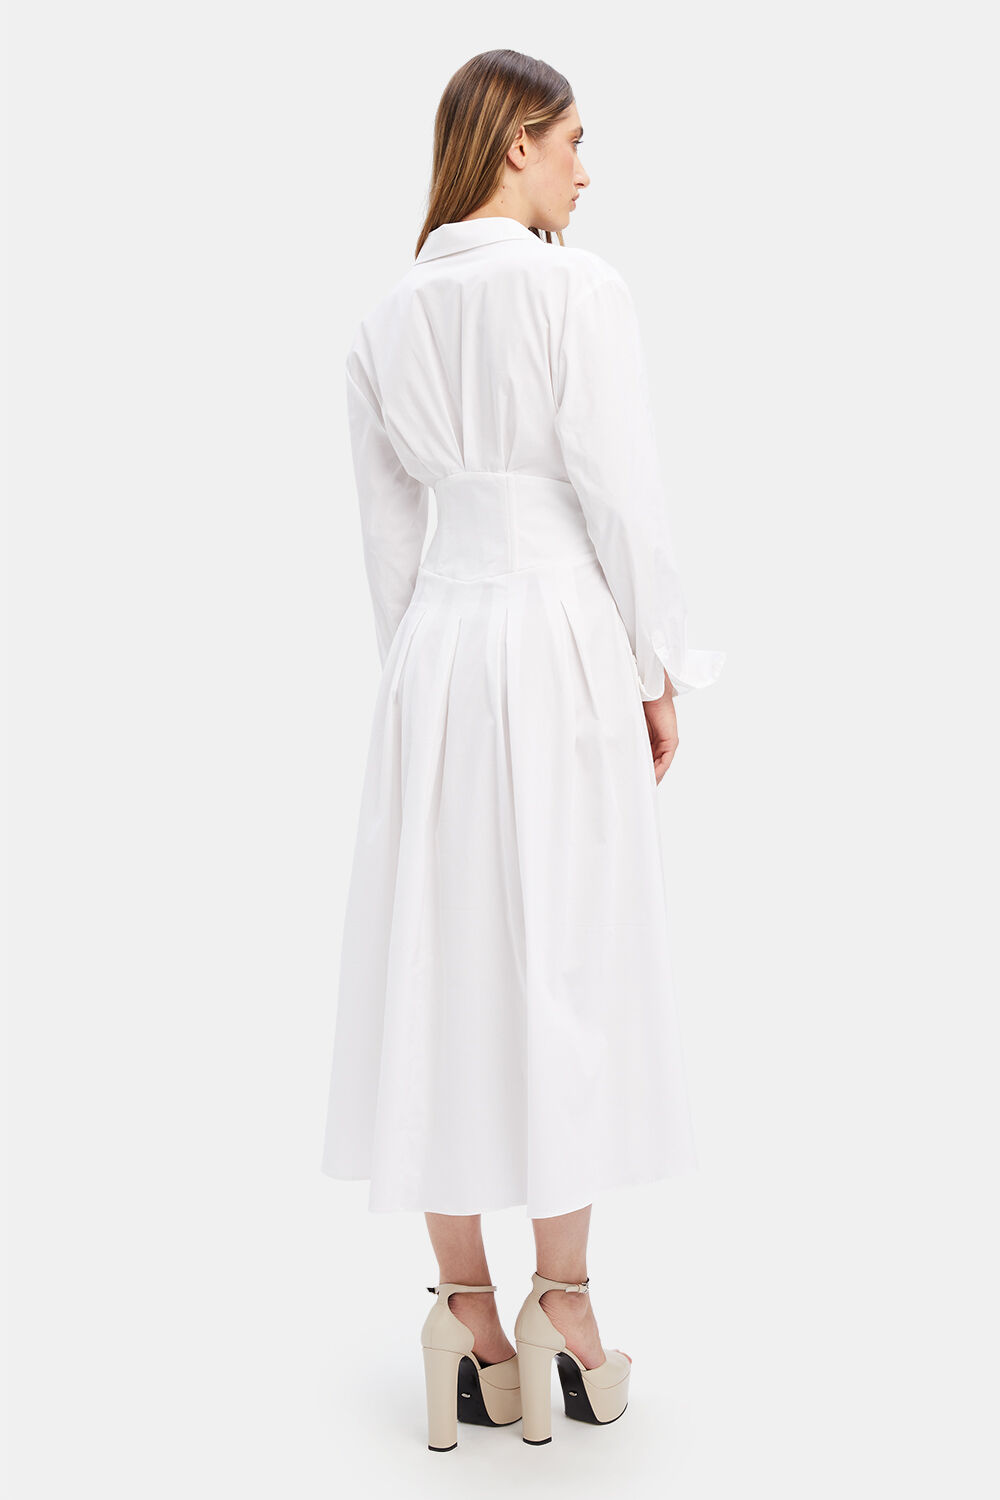 AMIRA CORSET SHIRT DRESS in colour BRIGHT WHITE